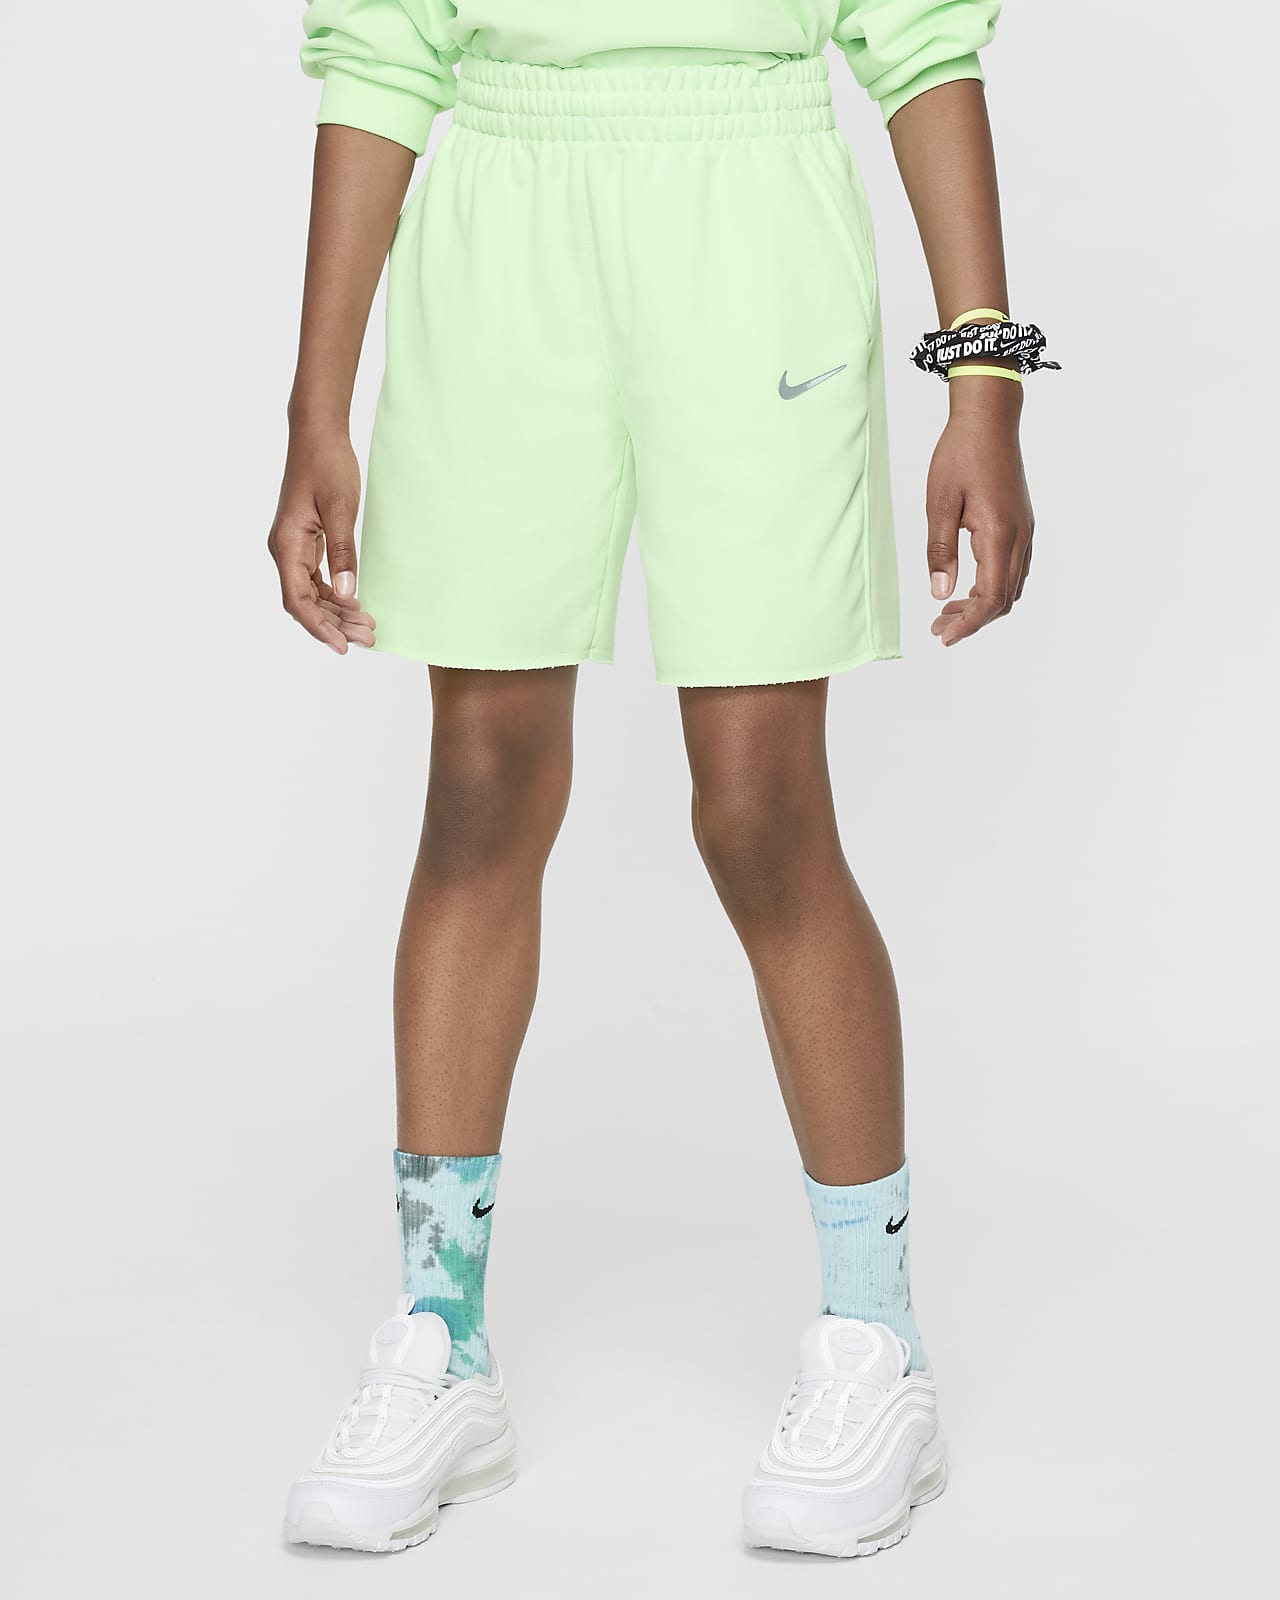 Calções de lã cardada Dri-FIT Nike Sportswear Júnior (Rapariga)